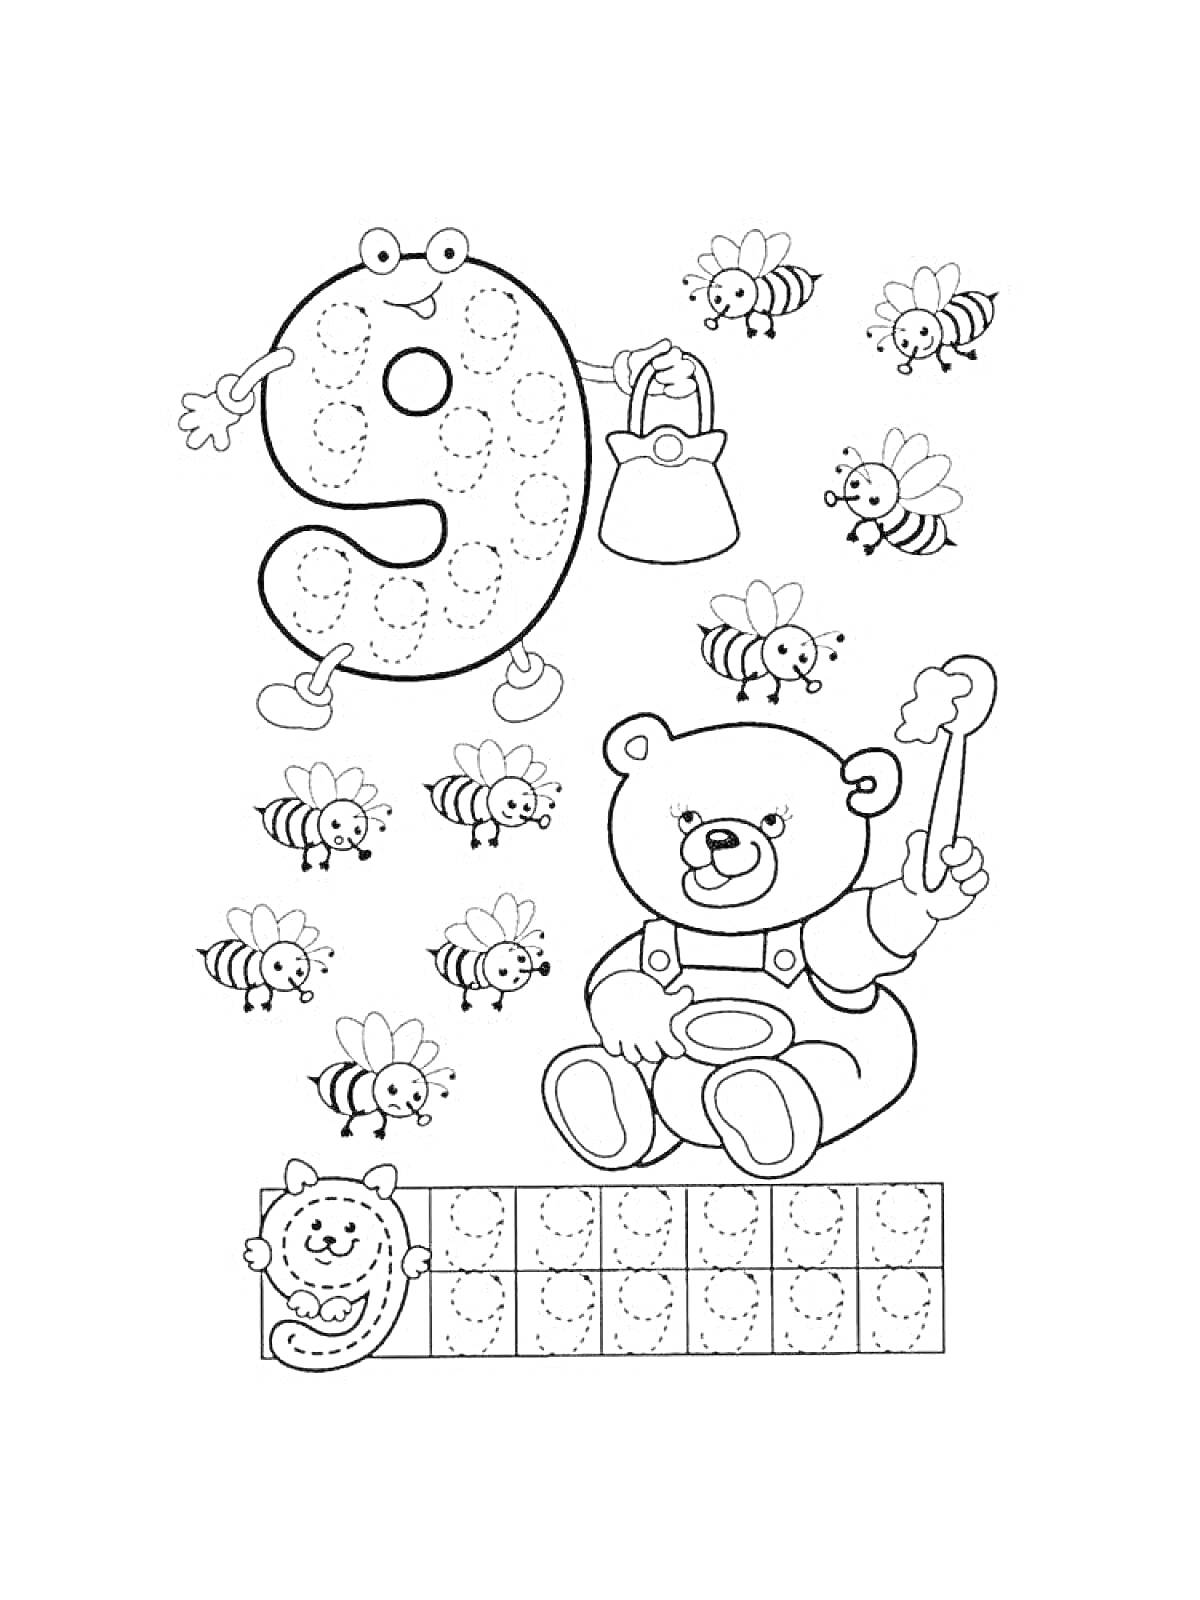 Раскраска Цифра 9, медвежонок с кистью, улей и пчёлы